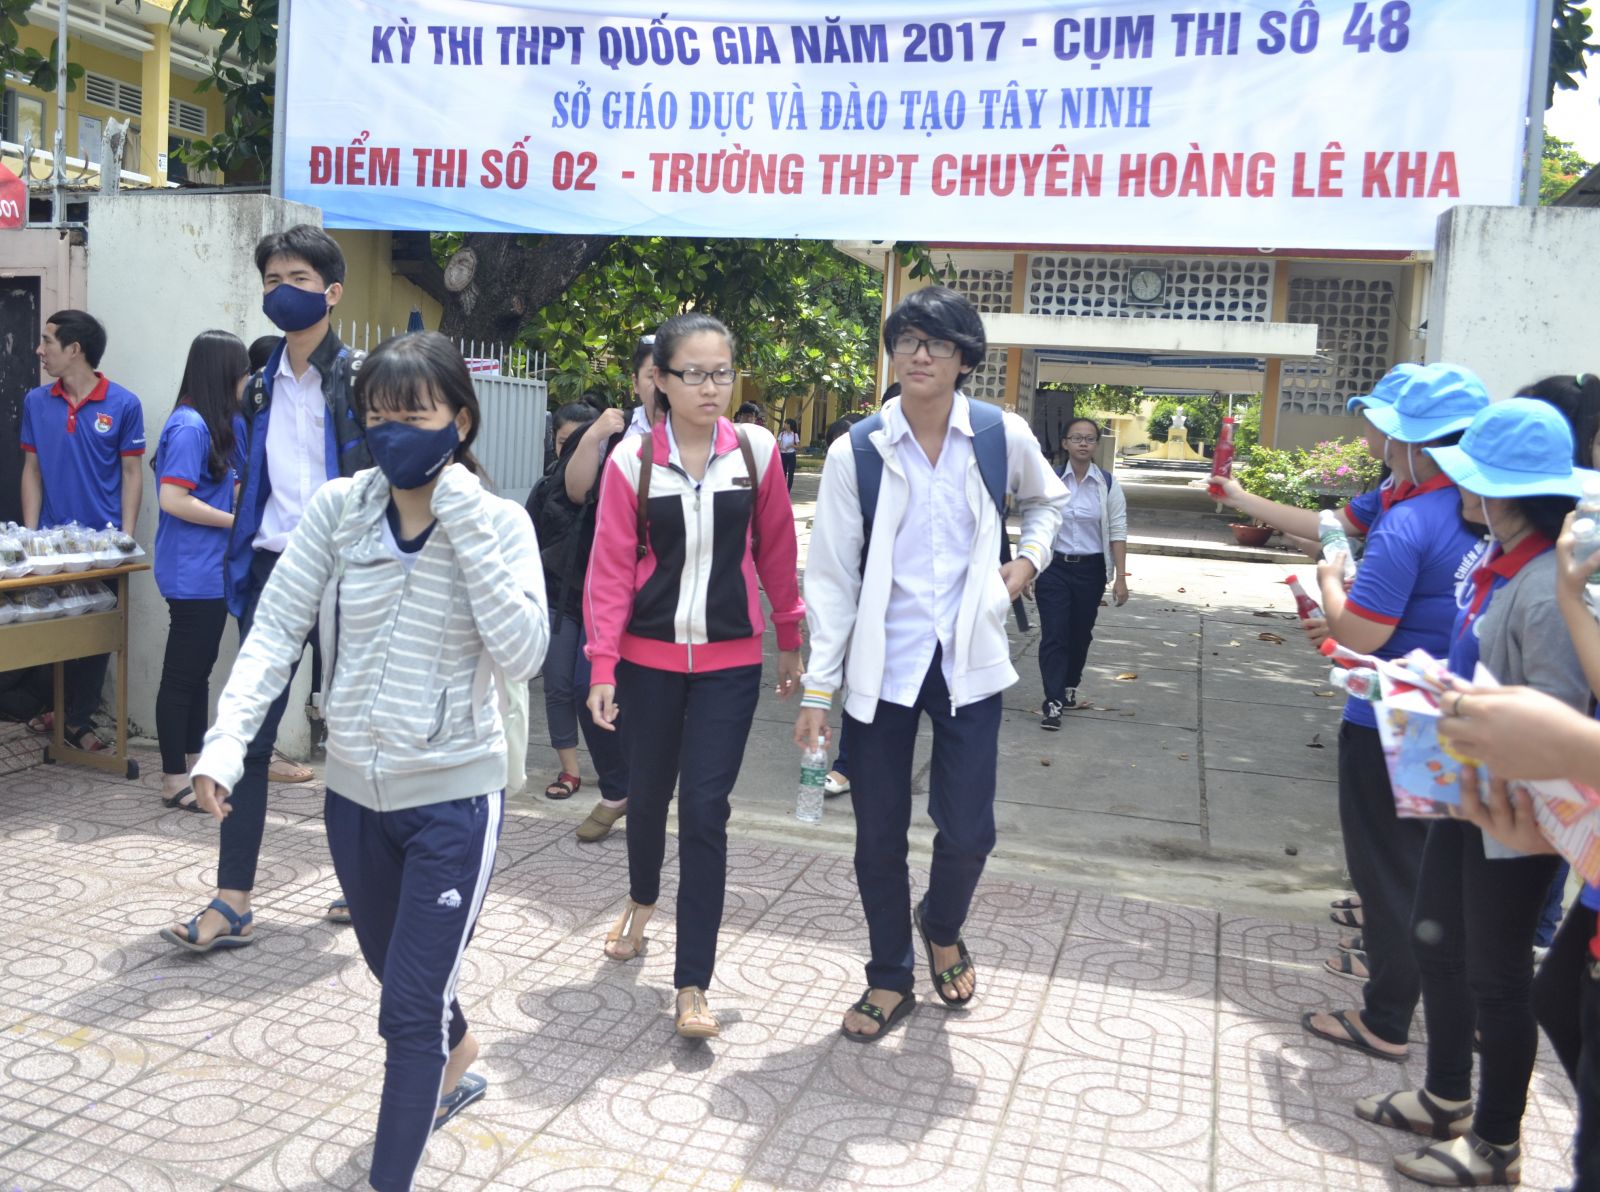 Điểm báo in Tây Ninh ngày 16.5.2018